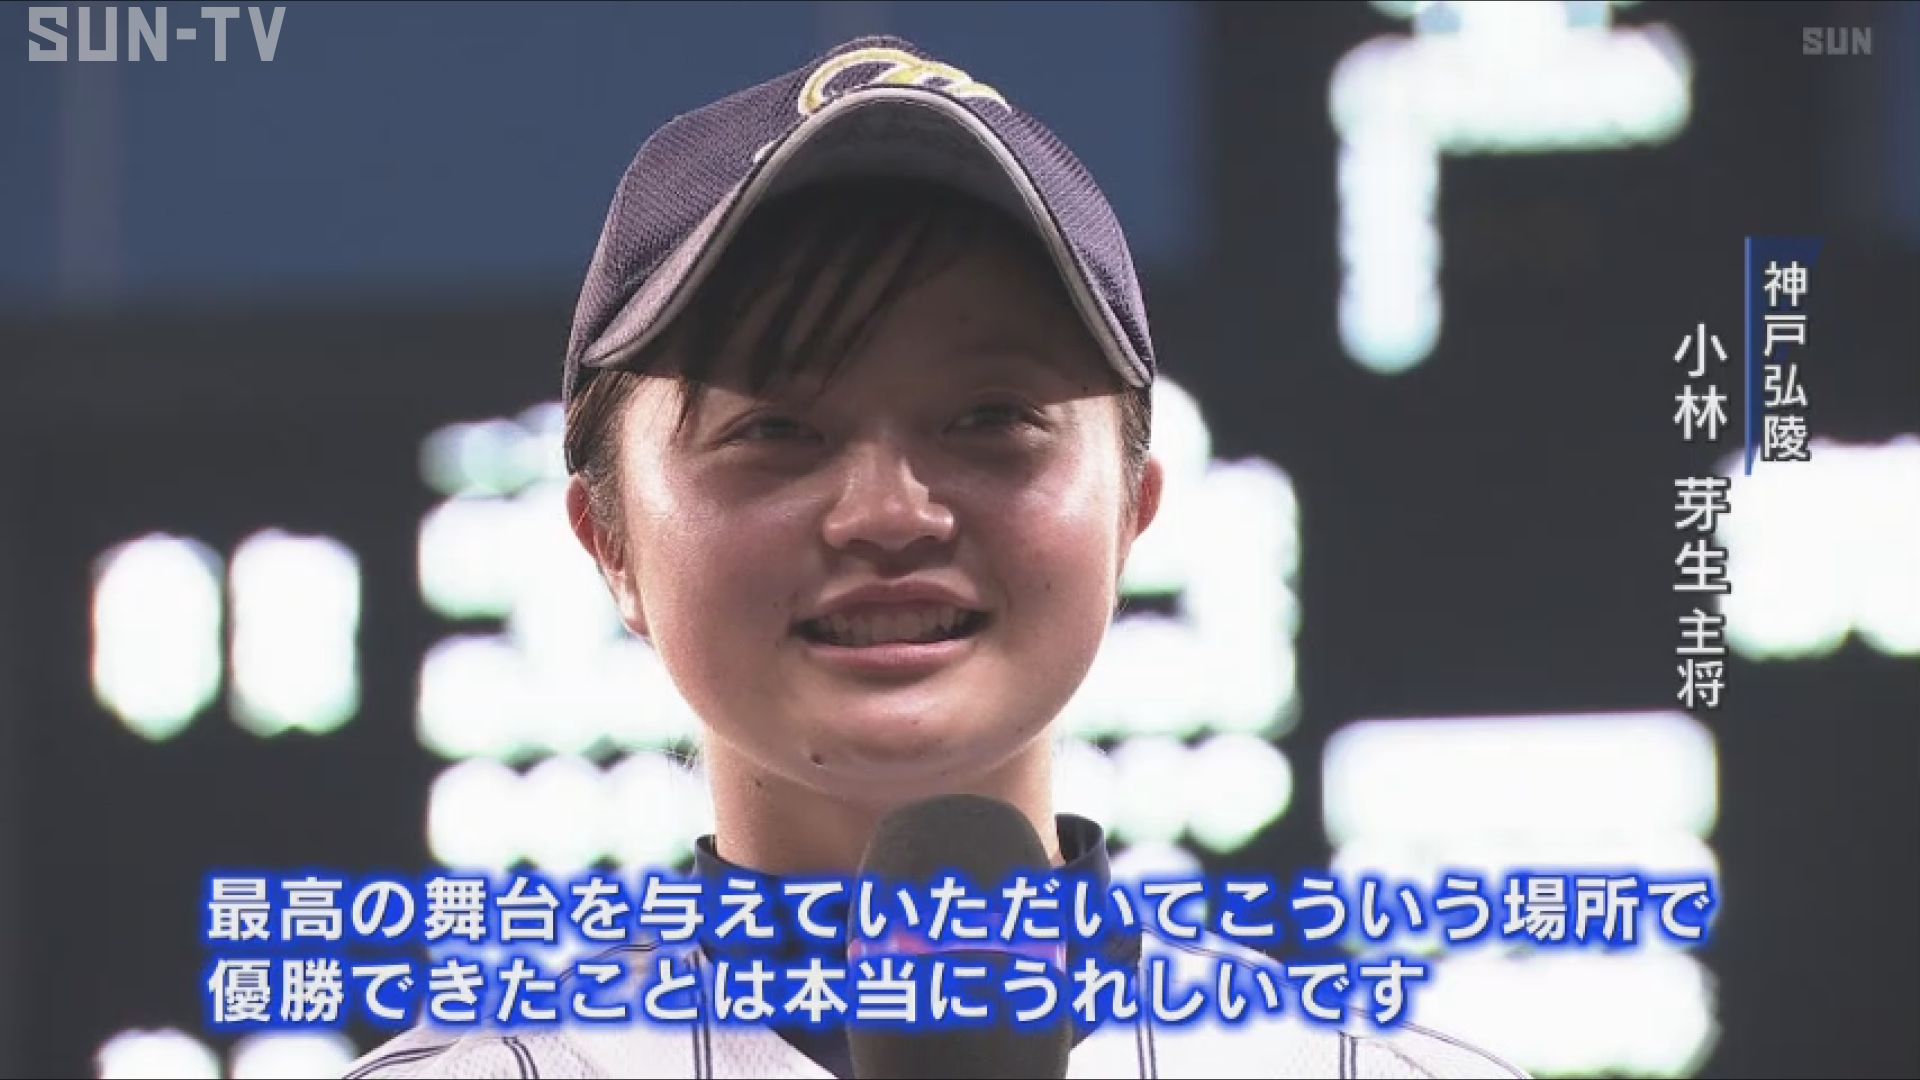 女子高校野球が甲子園で初の決勝 神戸弘陵がv サンテレビニュース